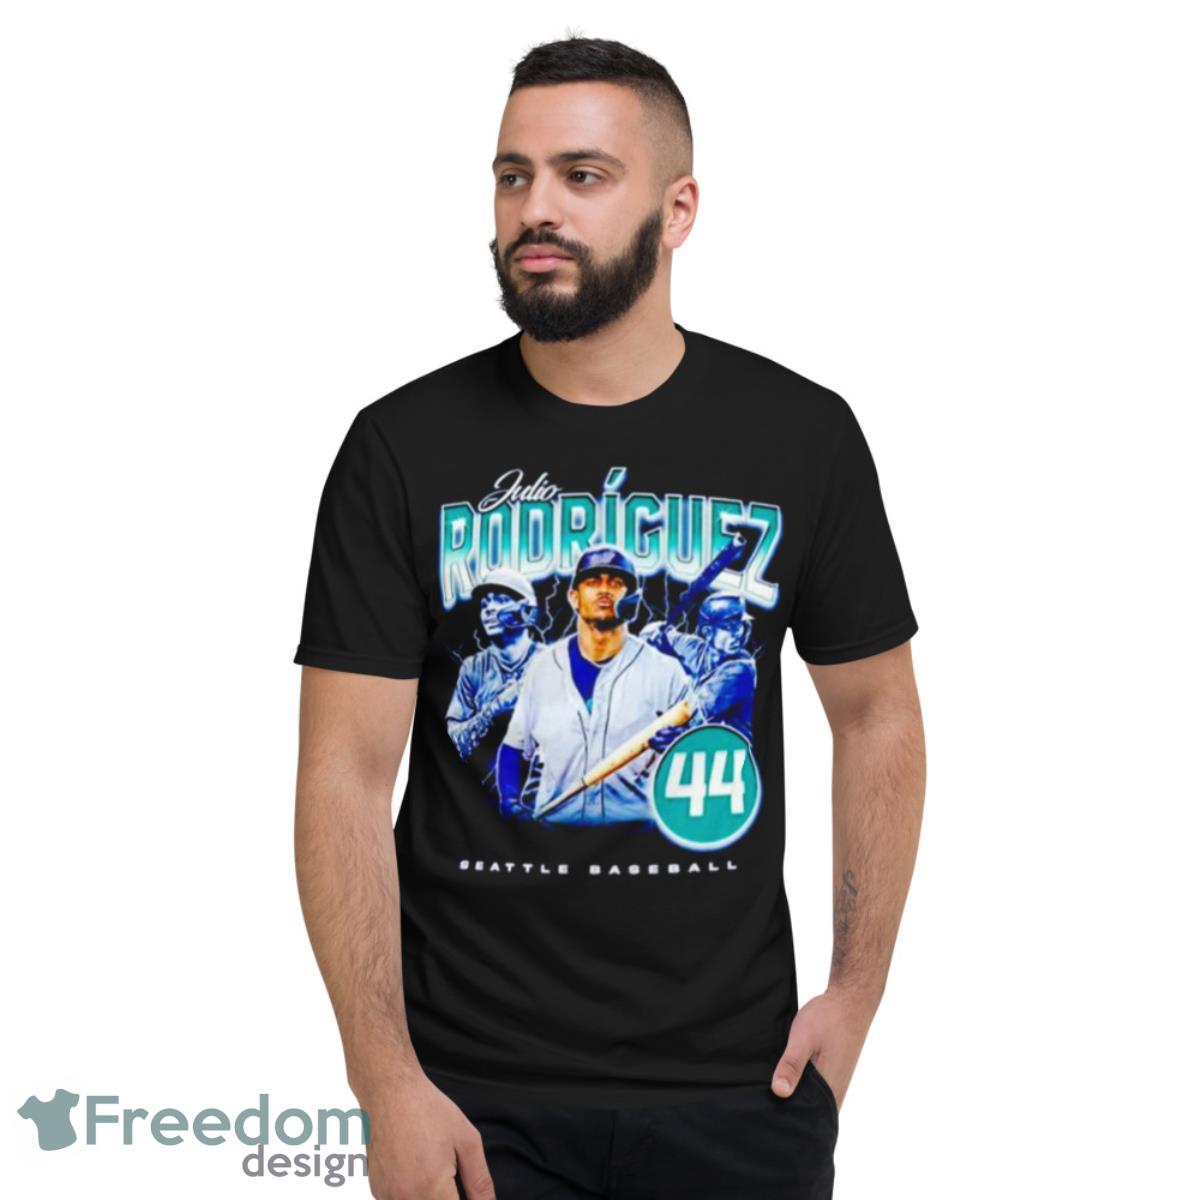 Julio Rodriguez-44 Seattle Baseball Jersey shirt